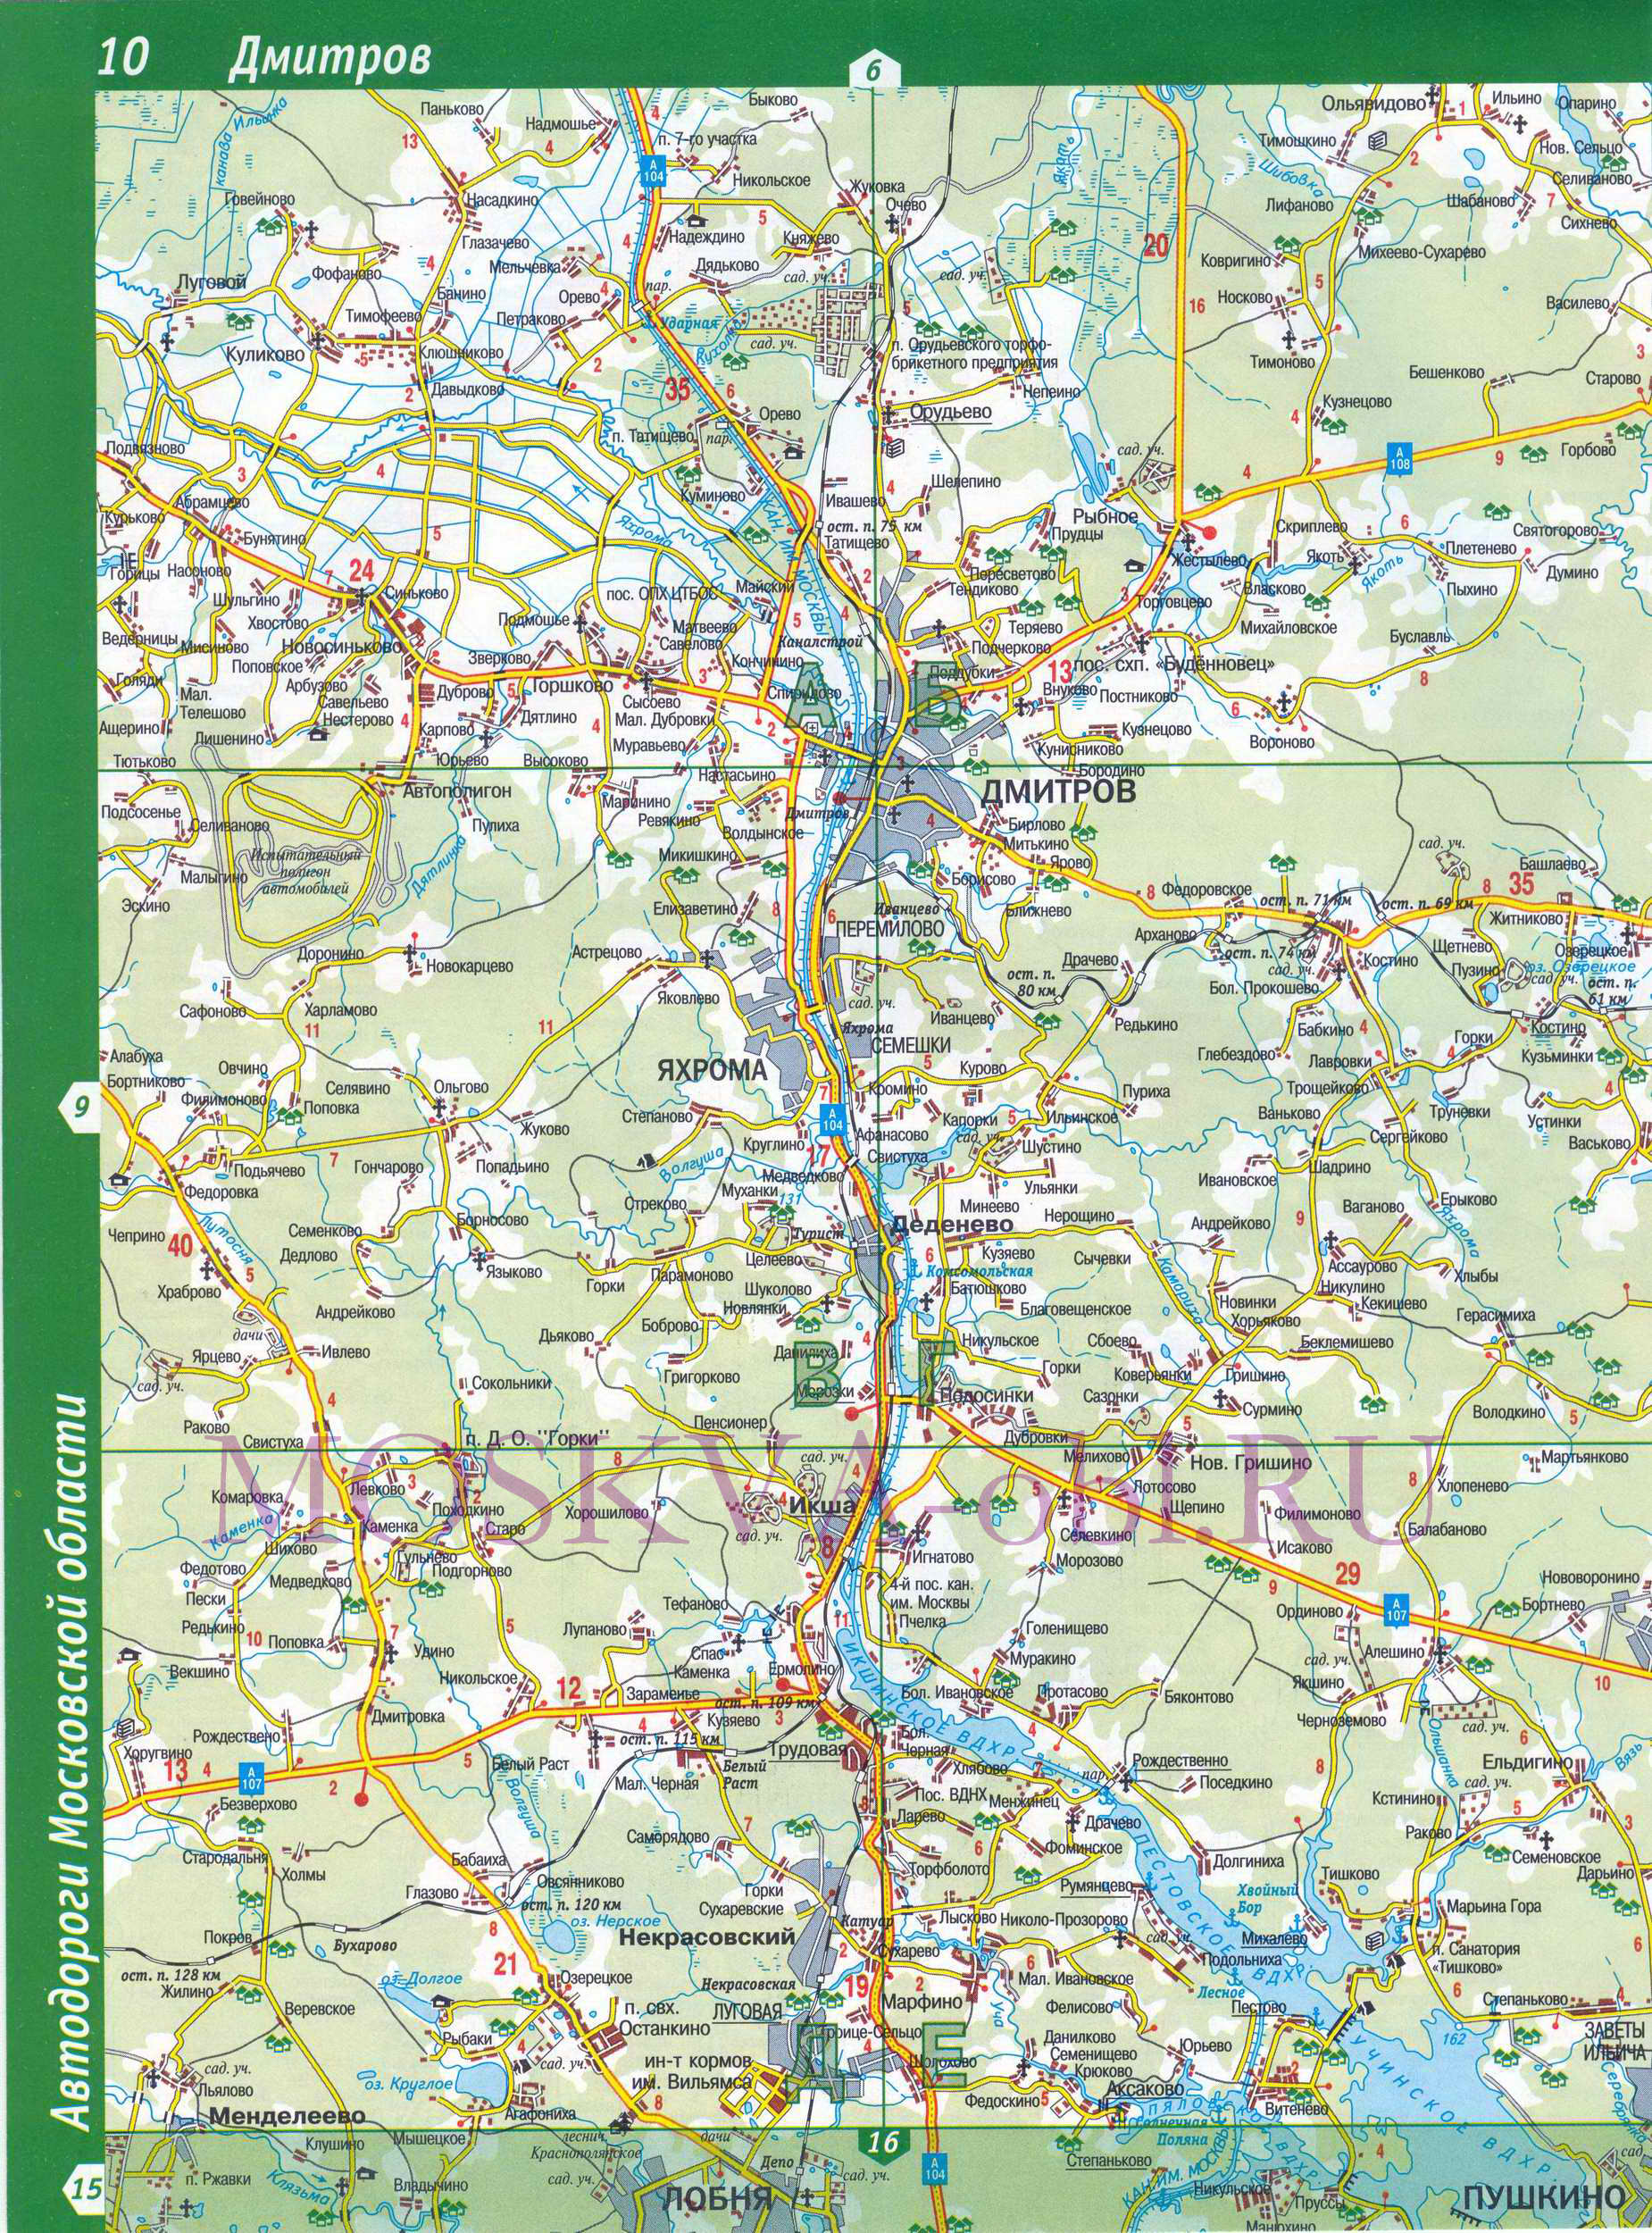 Карта Московской области. Московская область - подробная топографическая карта масштаба 1см:2км, C0 - 